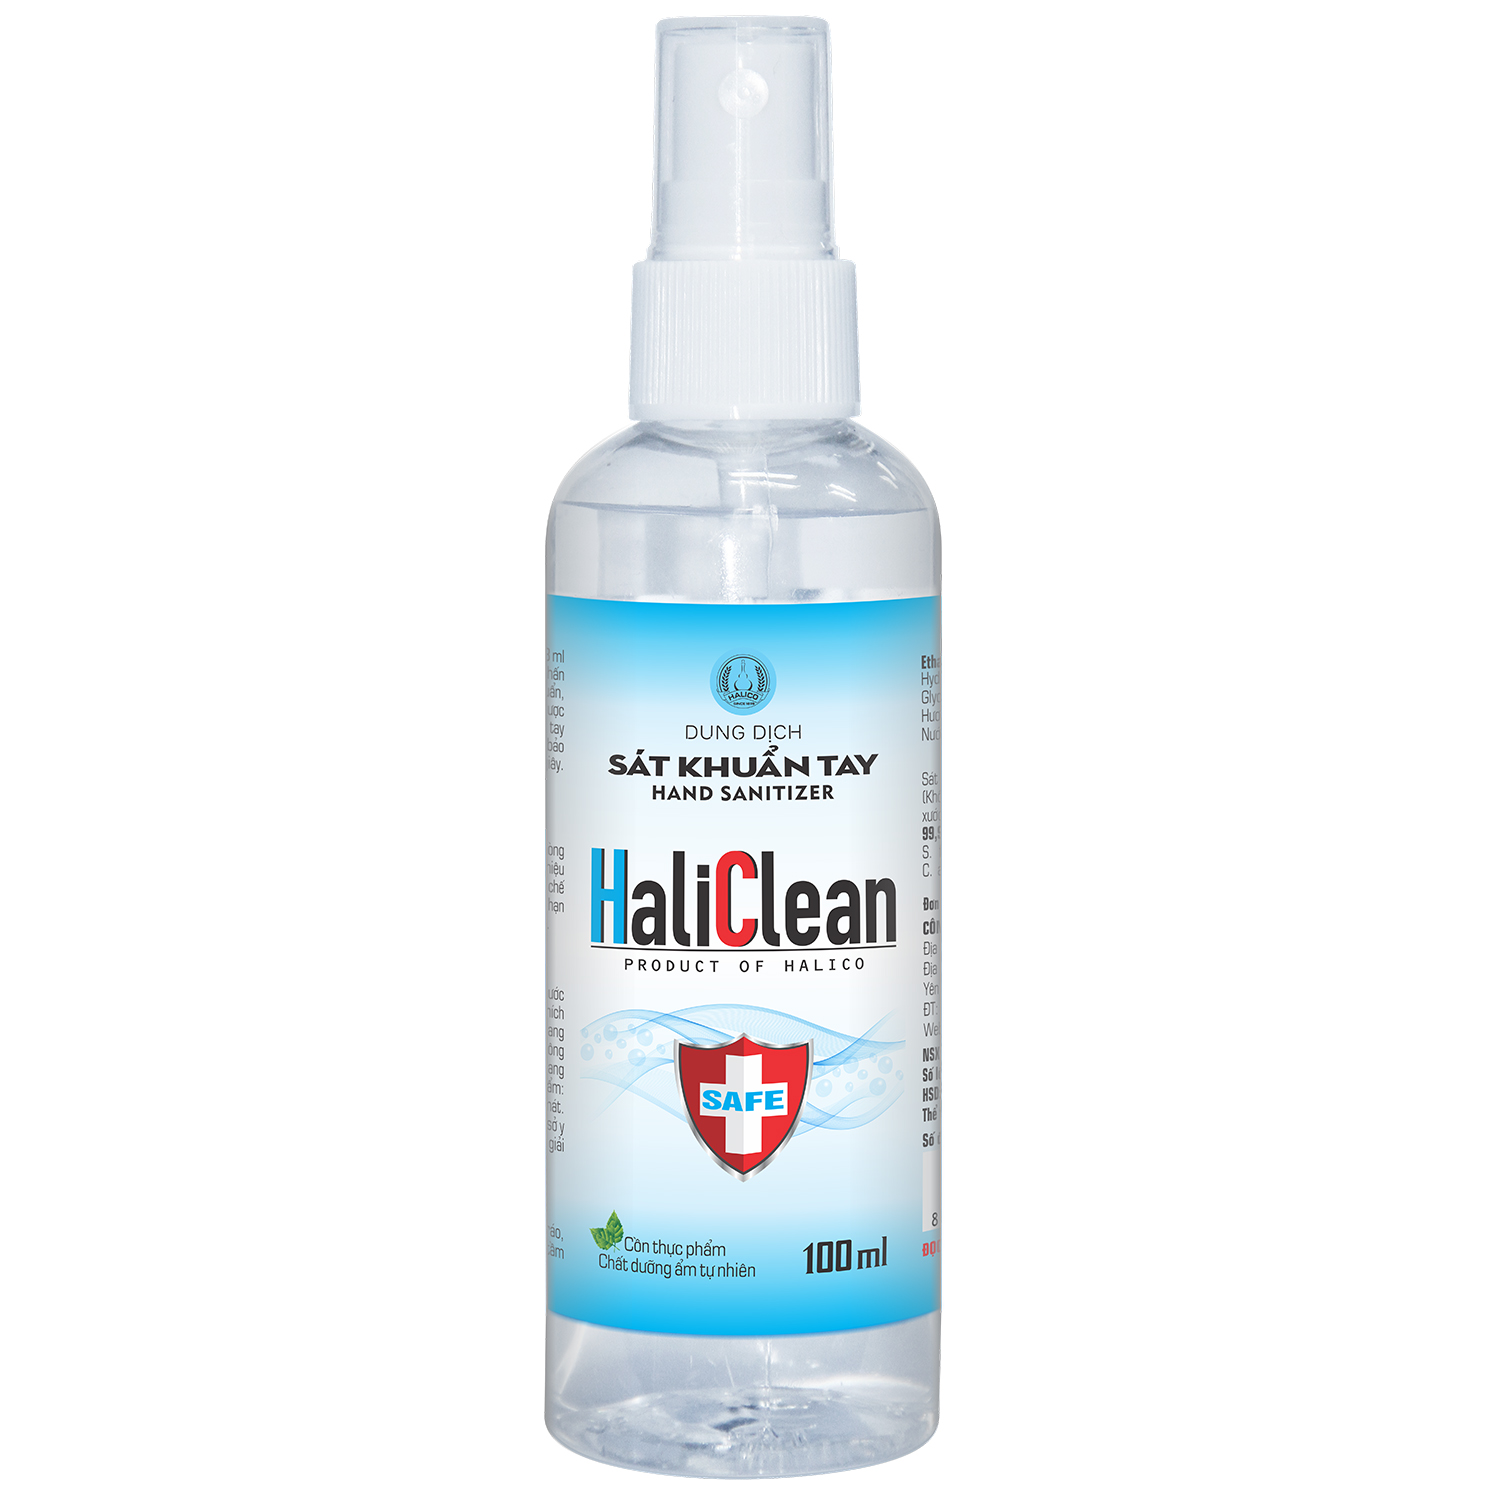 Dung dịch nước sát khuẩn tay nhanh tiêu chuẩn xuất khẩu HaliClean hand sanitizer 100ml dưỡng ẩm tự nhiên